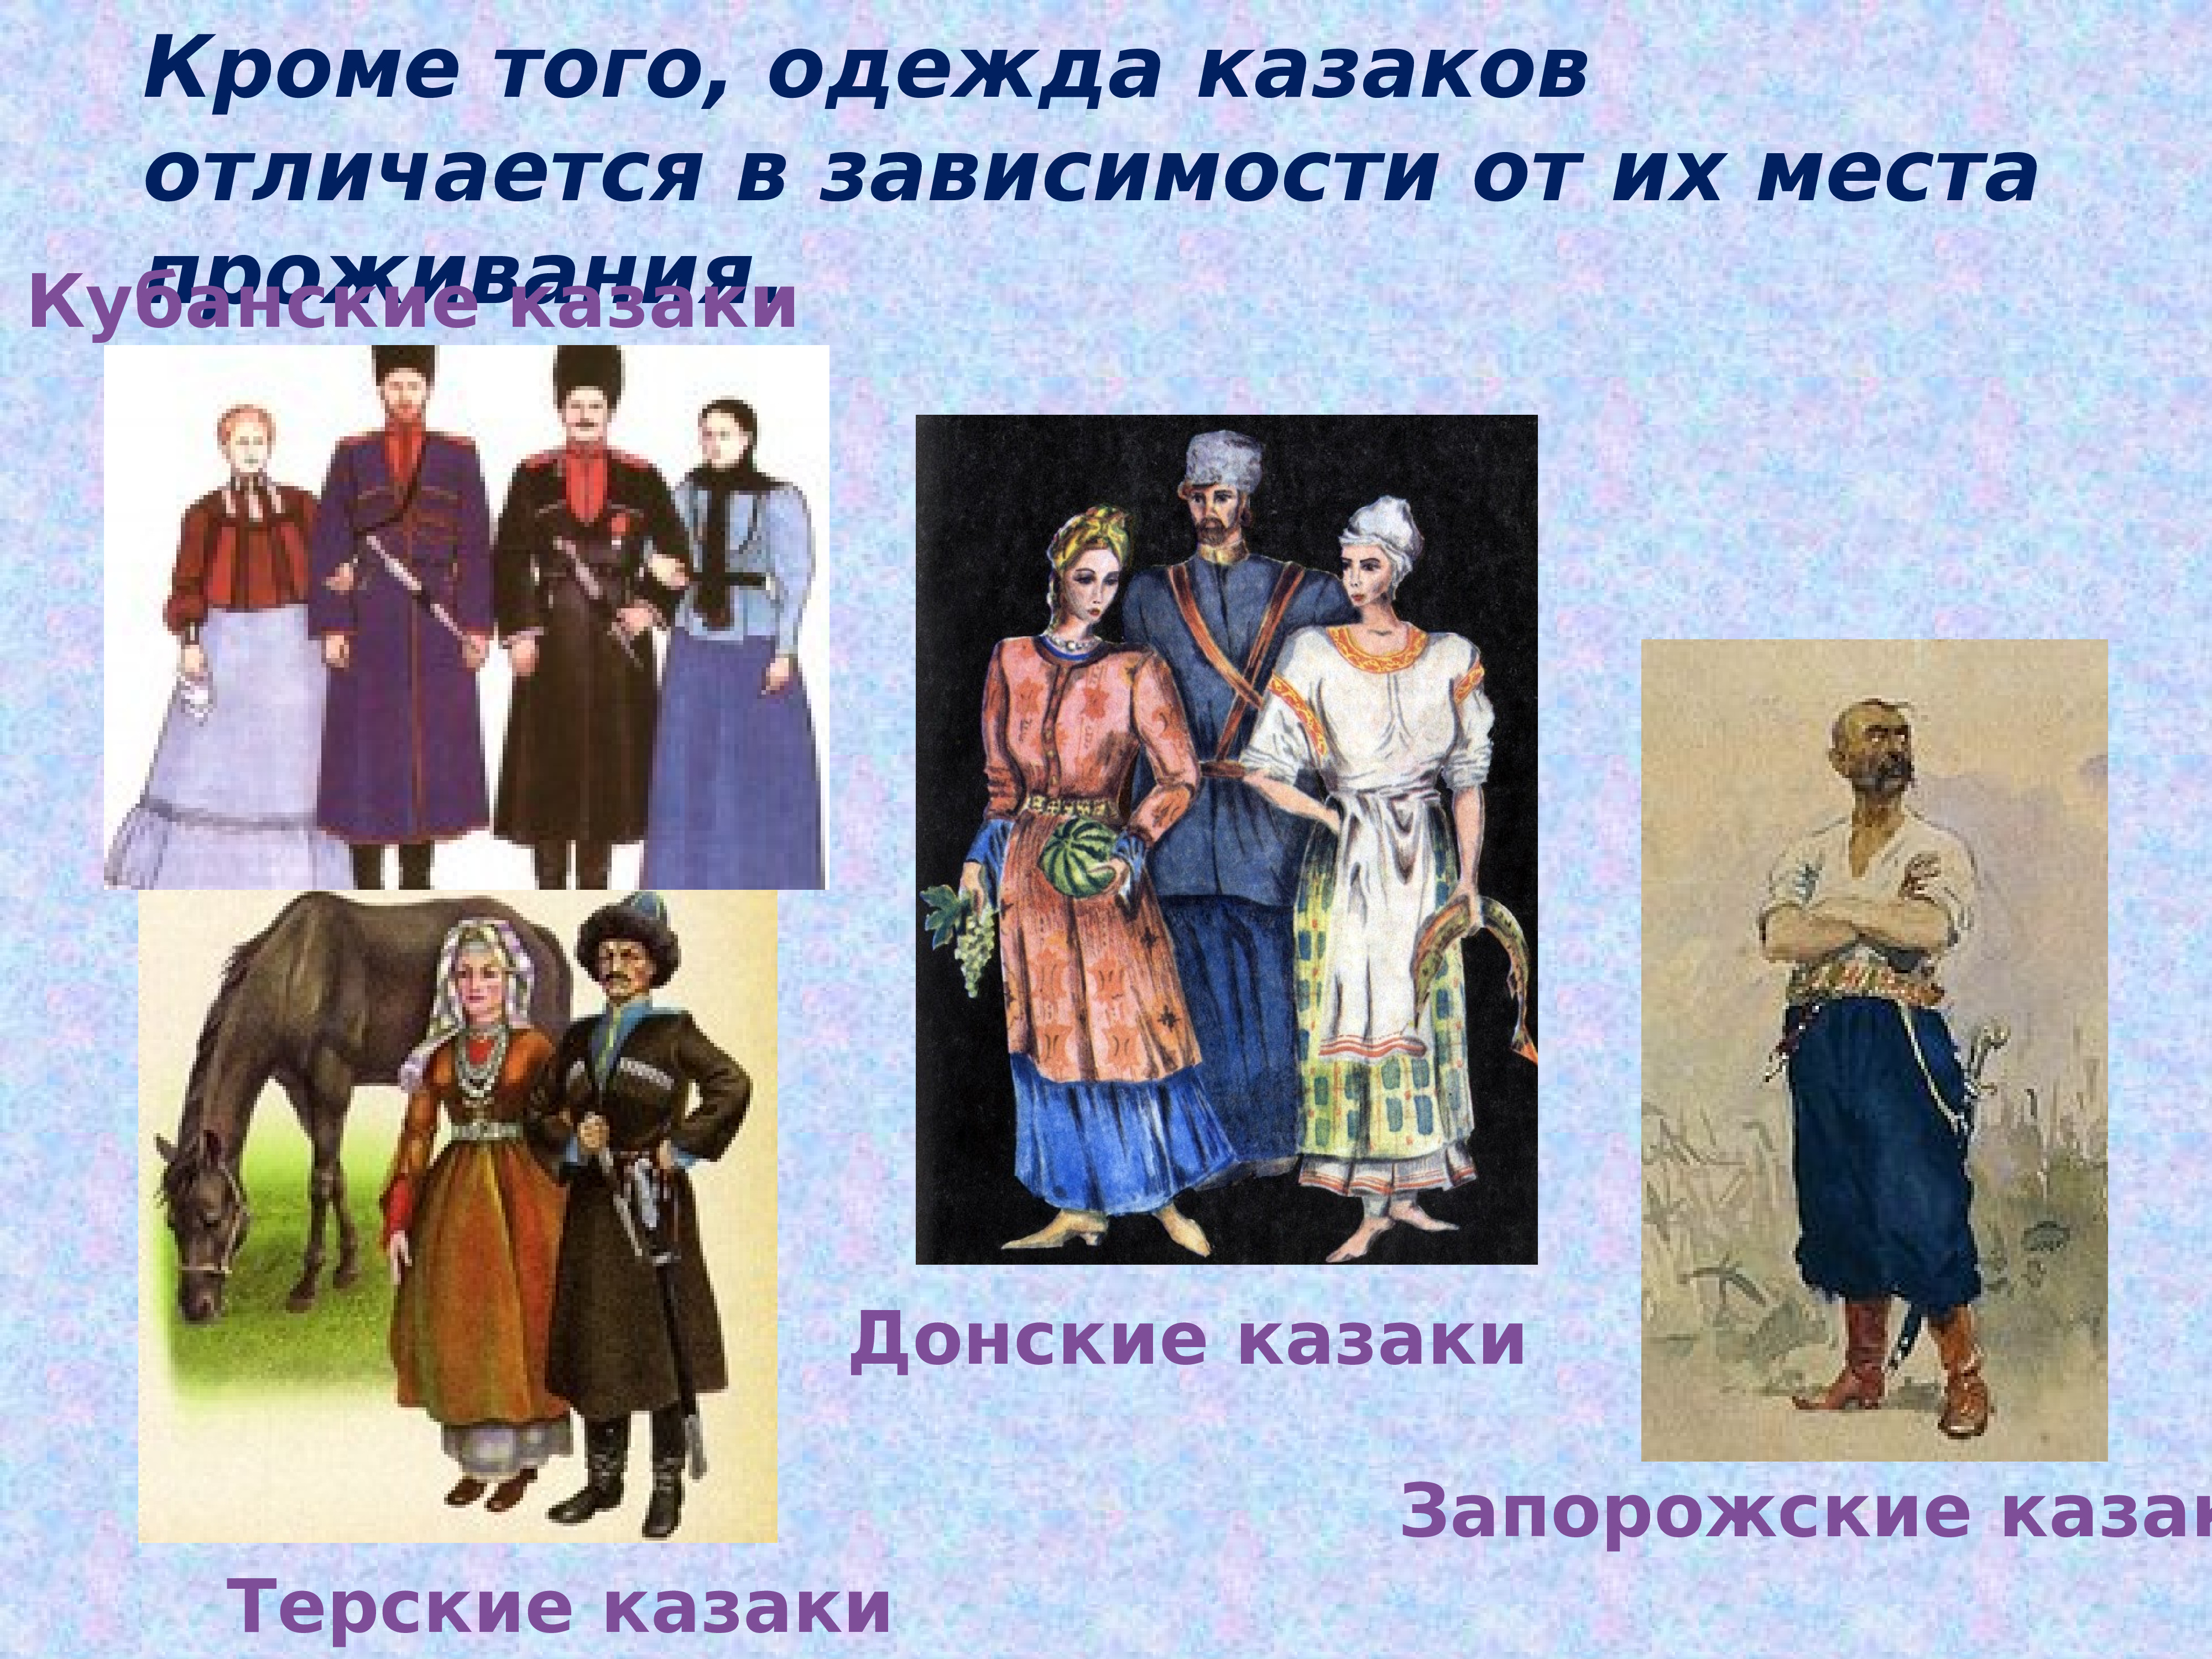 Исторический женский костюм Донской казачки